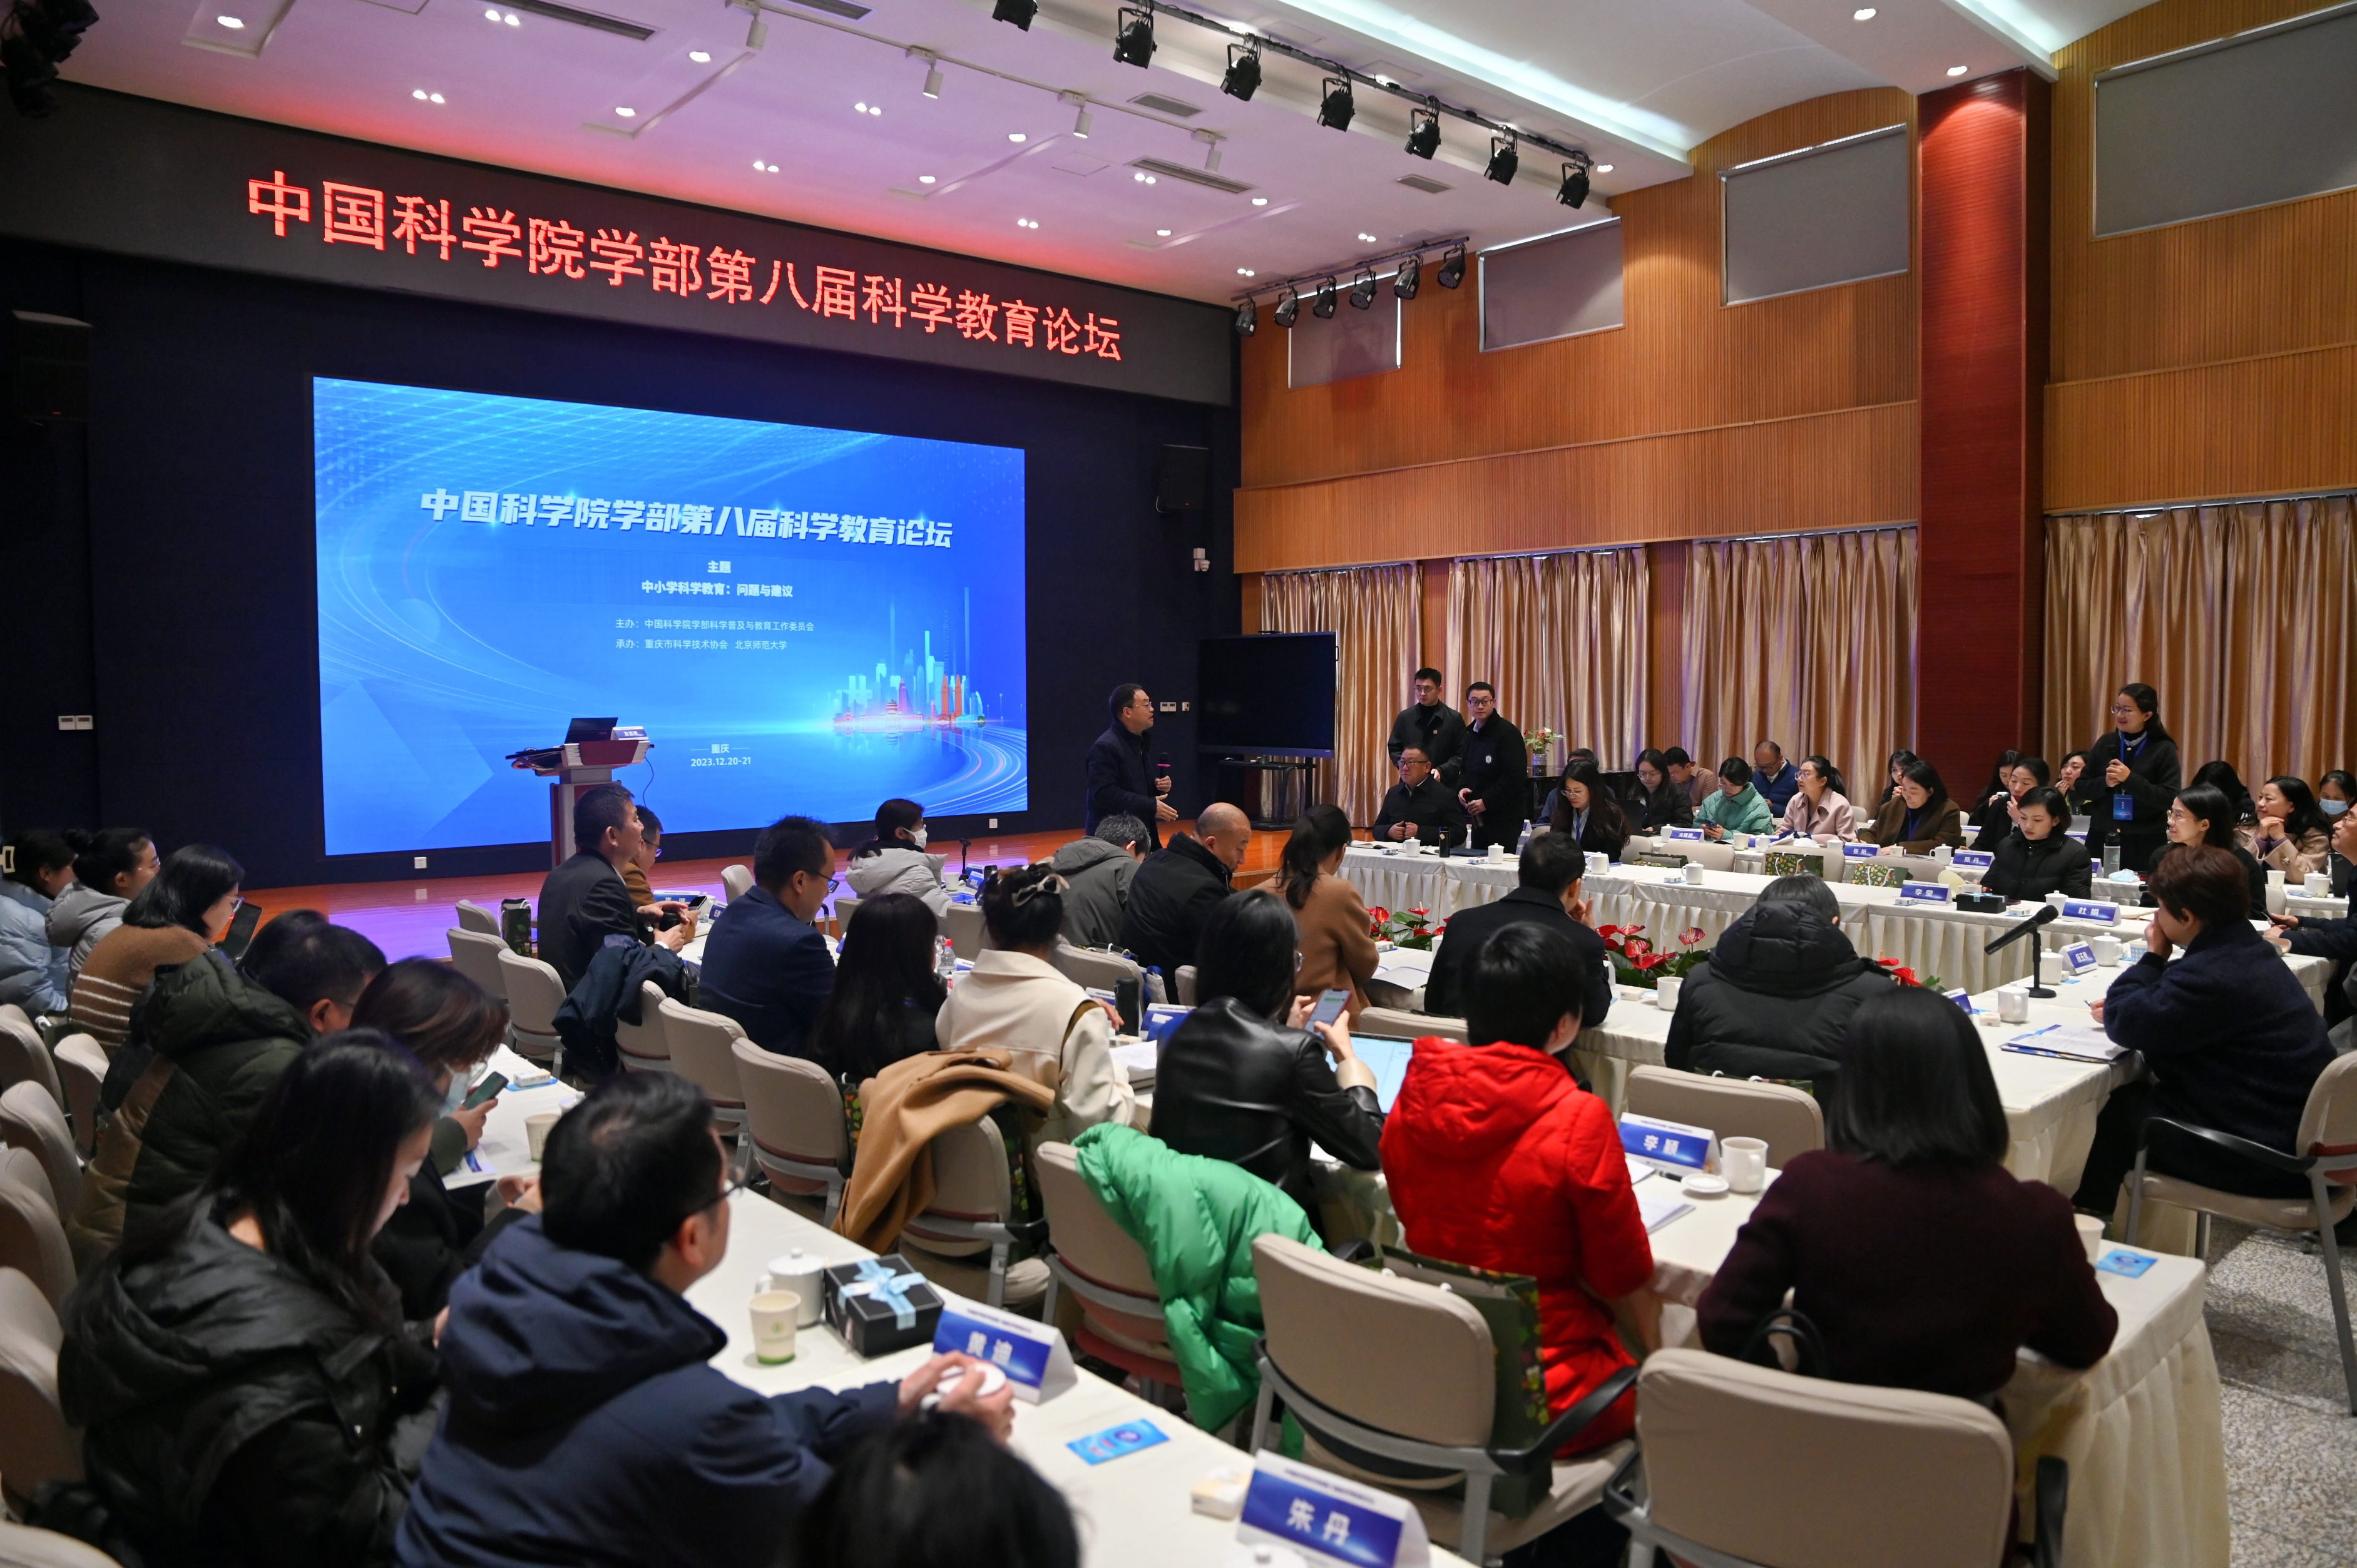 聚焦中小学科学教育 中国科学院学部第八届科学教育论坛在渝举行